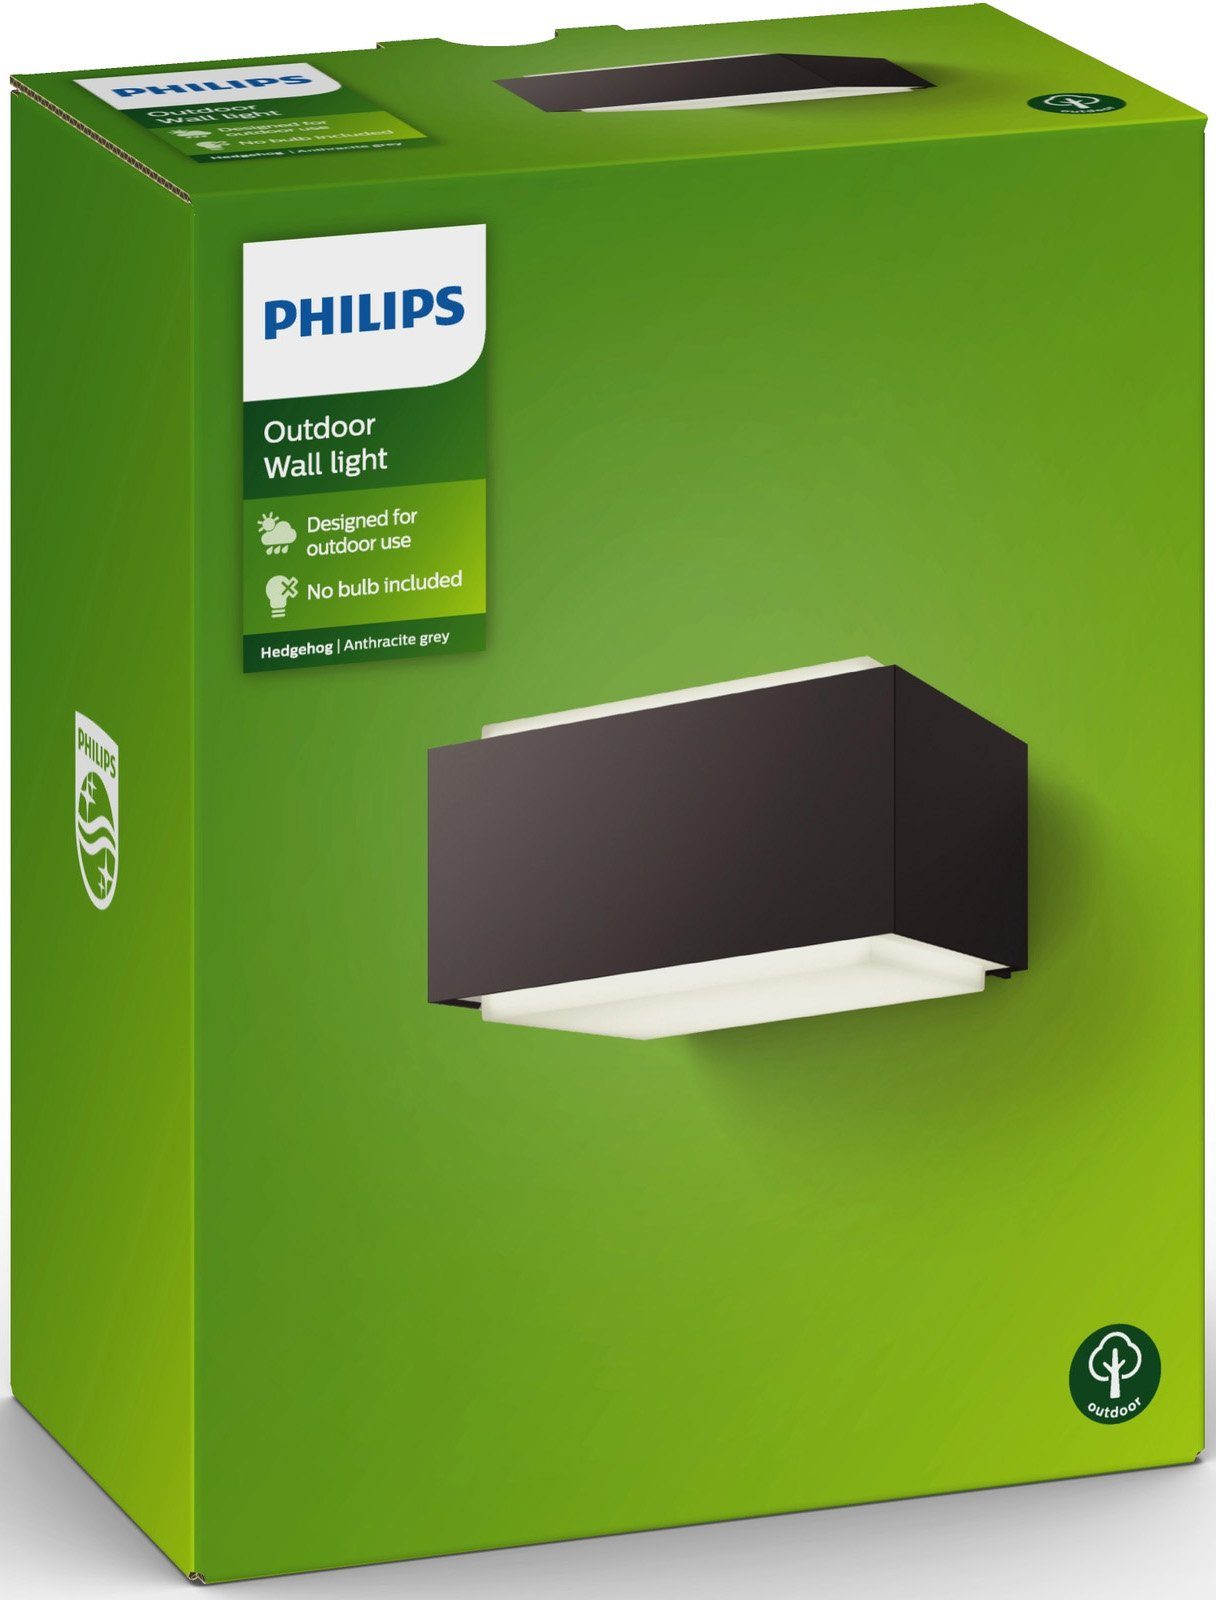 LED Ihrer für Wandleuchte Anthrazit, Lichtverhältnisse optimale Sorgt Philips wechselbar, Hedgehog, exkl Wandleuchte auf Terrasse LM